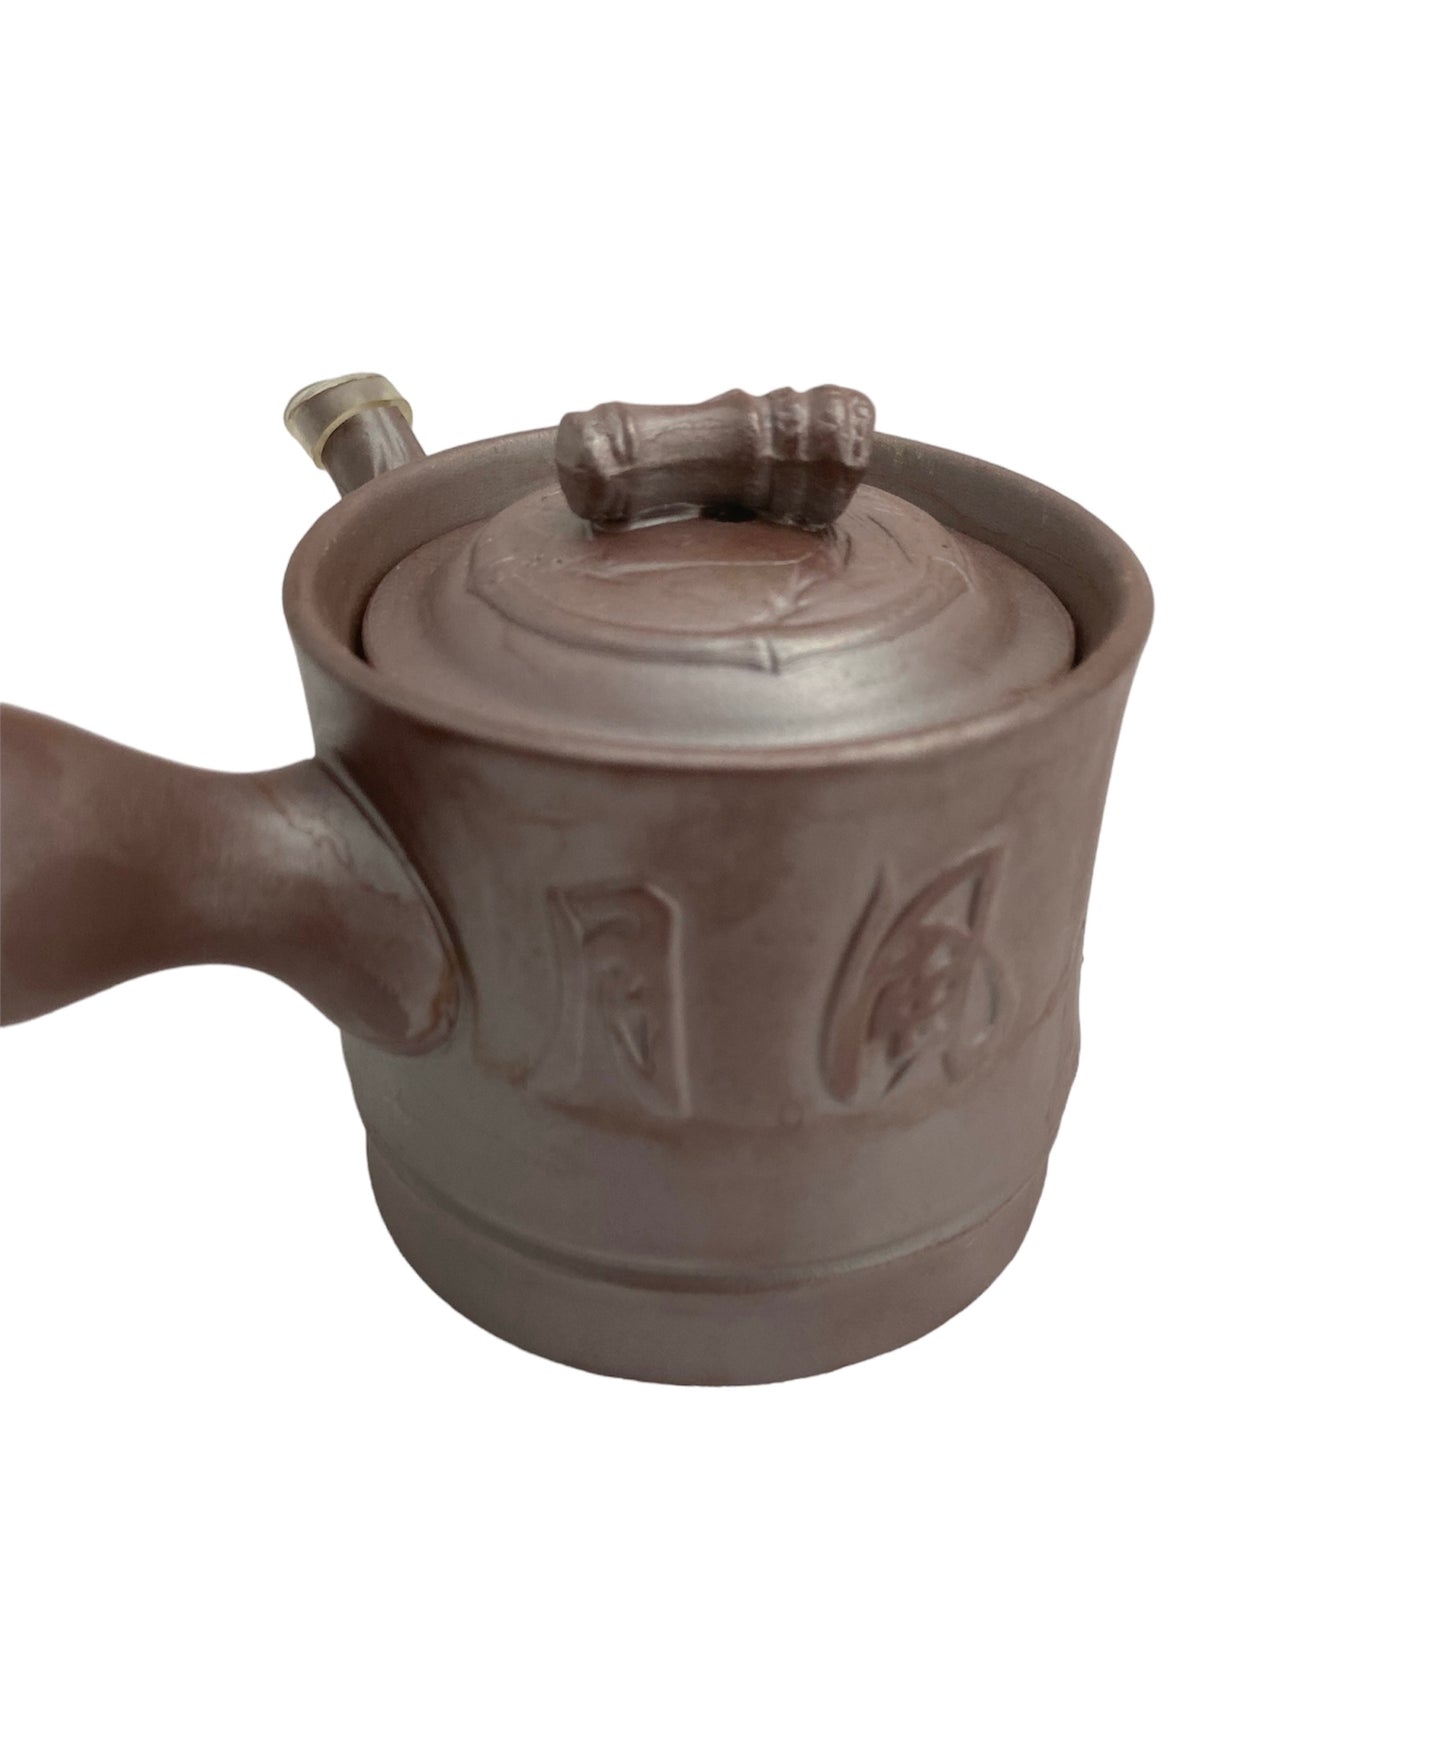 TOKONAMEYAKI small teapot